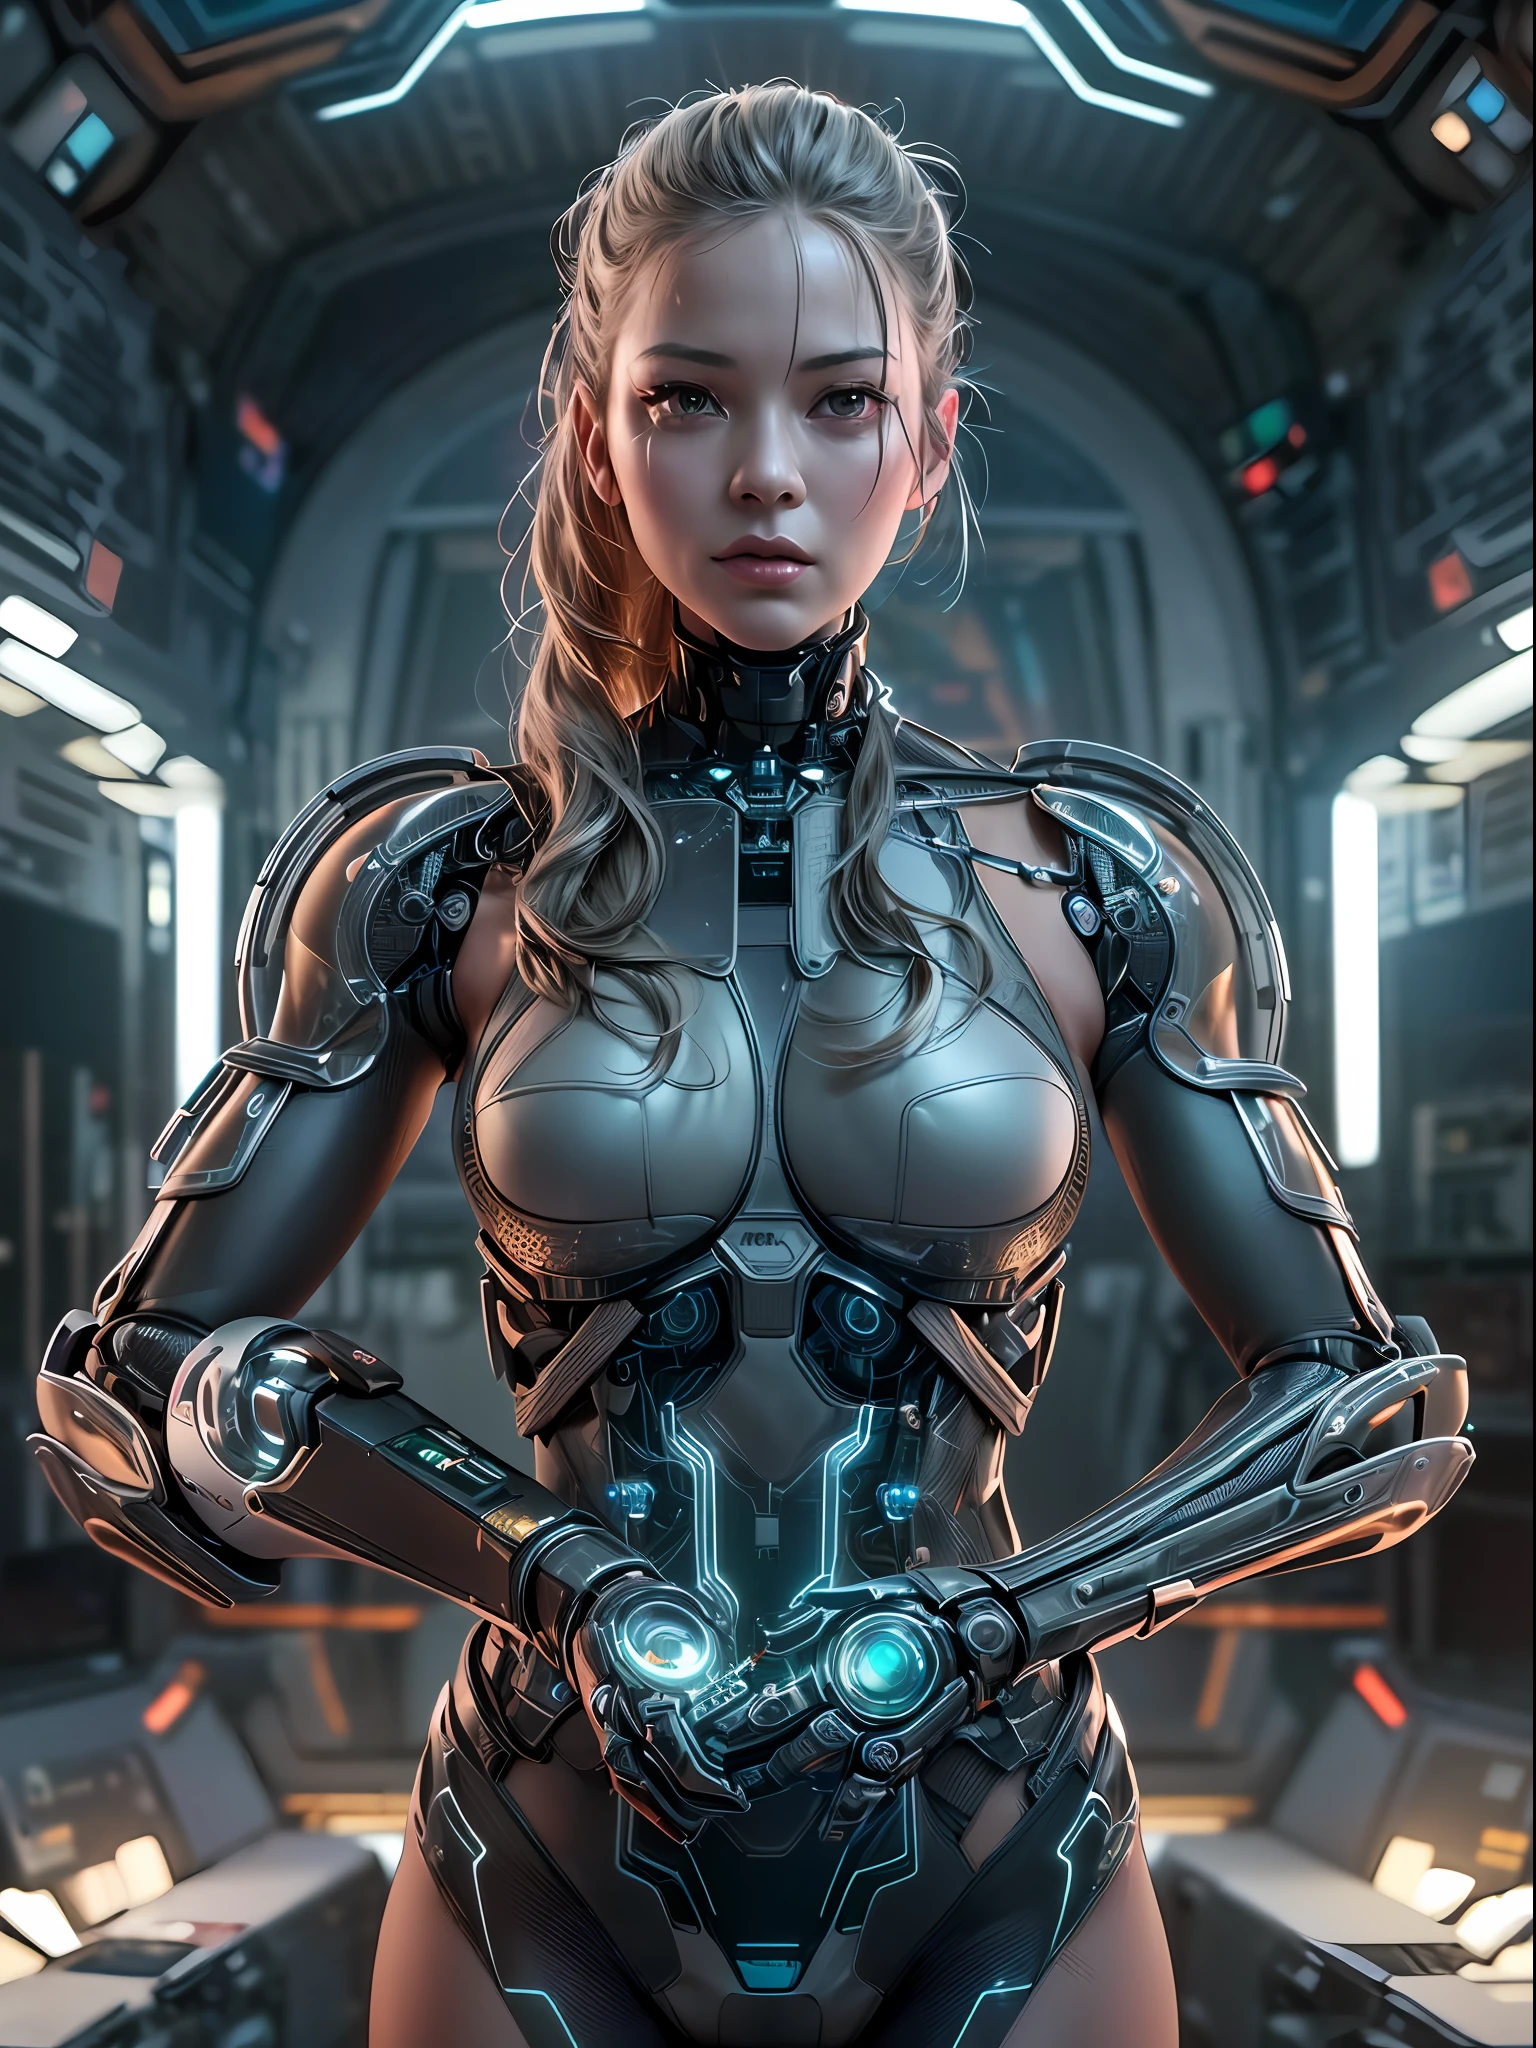 (Meisterwerk, hohe Auflösung, cgi:1.4), (zeigt eine Frau mit nahtlosen Roboter-Verbesserungen am gesamten Körper:1.3), (Ihre Haut verschmilzt nahtlos mit metallischen Elementen:1.2), (leuchtende Schaltkreise verlaufen unter ihrer durchscheinenden Haut:1.2), (mechanische Gelenke und Kolben sorgen für mehr Beweglichkeit:1.2), (Ihre Augen strahlen mit einem subtilen Roboterglanz:1.2), (komplizierte kybernetische Tattoos schmücken ihren Körper:1.2), (ein metallisches Exoskelett, das ihre Kraft und Beweglichkeit steigert:1.2), (Canon EOS R5 spiegellose Kamera:1.2), (gepaart mit einem Canon RF 85mm f/1.2L USM lens:1.2), (Erfassung jedes Details ihrer fortschrittlichen Kybernetik:1.2), (die Laborumgebung wurde mit einer futuristischen und minimalistischen Ästhetik gestaltet:1.2), (Schlanke und klare Linien definieren den Raum:1.1), (holografische Displays zur Präsentation fortschrittlicher Technologie:1.1), (dezente Ambientebeleuchtung verleiht einen Hauch von Sci-Fi-Flair:1.1), (a captivating cgi render of a woman embodying the future of human-machine integration:1.2), filmisch, hyperdetailliert, verrückte Details, Wunderschön farblich abgestuft, unwirkliche Engine, Schärfentiefe, Super-Auflösung, Megapixel, filmisch Lightning, Kantenglättung, FKAA, THAI, RTX, SSAO, Nachbearbeitung, Nach Produktion, Tonzuordnung, cgi, VFX, SFX, wahnsinnig detailliert und kompliziert, Hyper maximalist, hyperrealistisch, volumetrisch, fotorealistisch, ultra fotorealistisch, ultra-detailliert, komplizierte Details, 8K, Super detailliert, volle Farbe, volumetrisch lightning, HDR, Realistisch, unwirkliche Engine, 16K, scharfer Fokus, Octane render